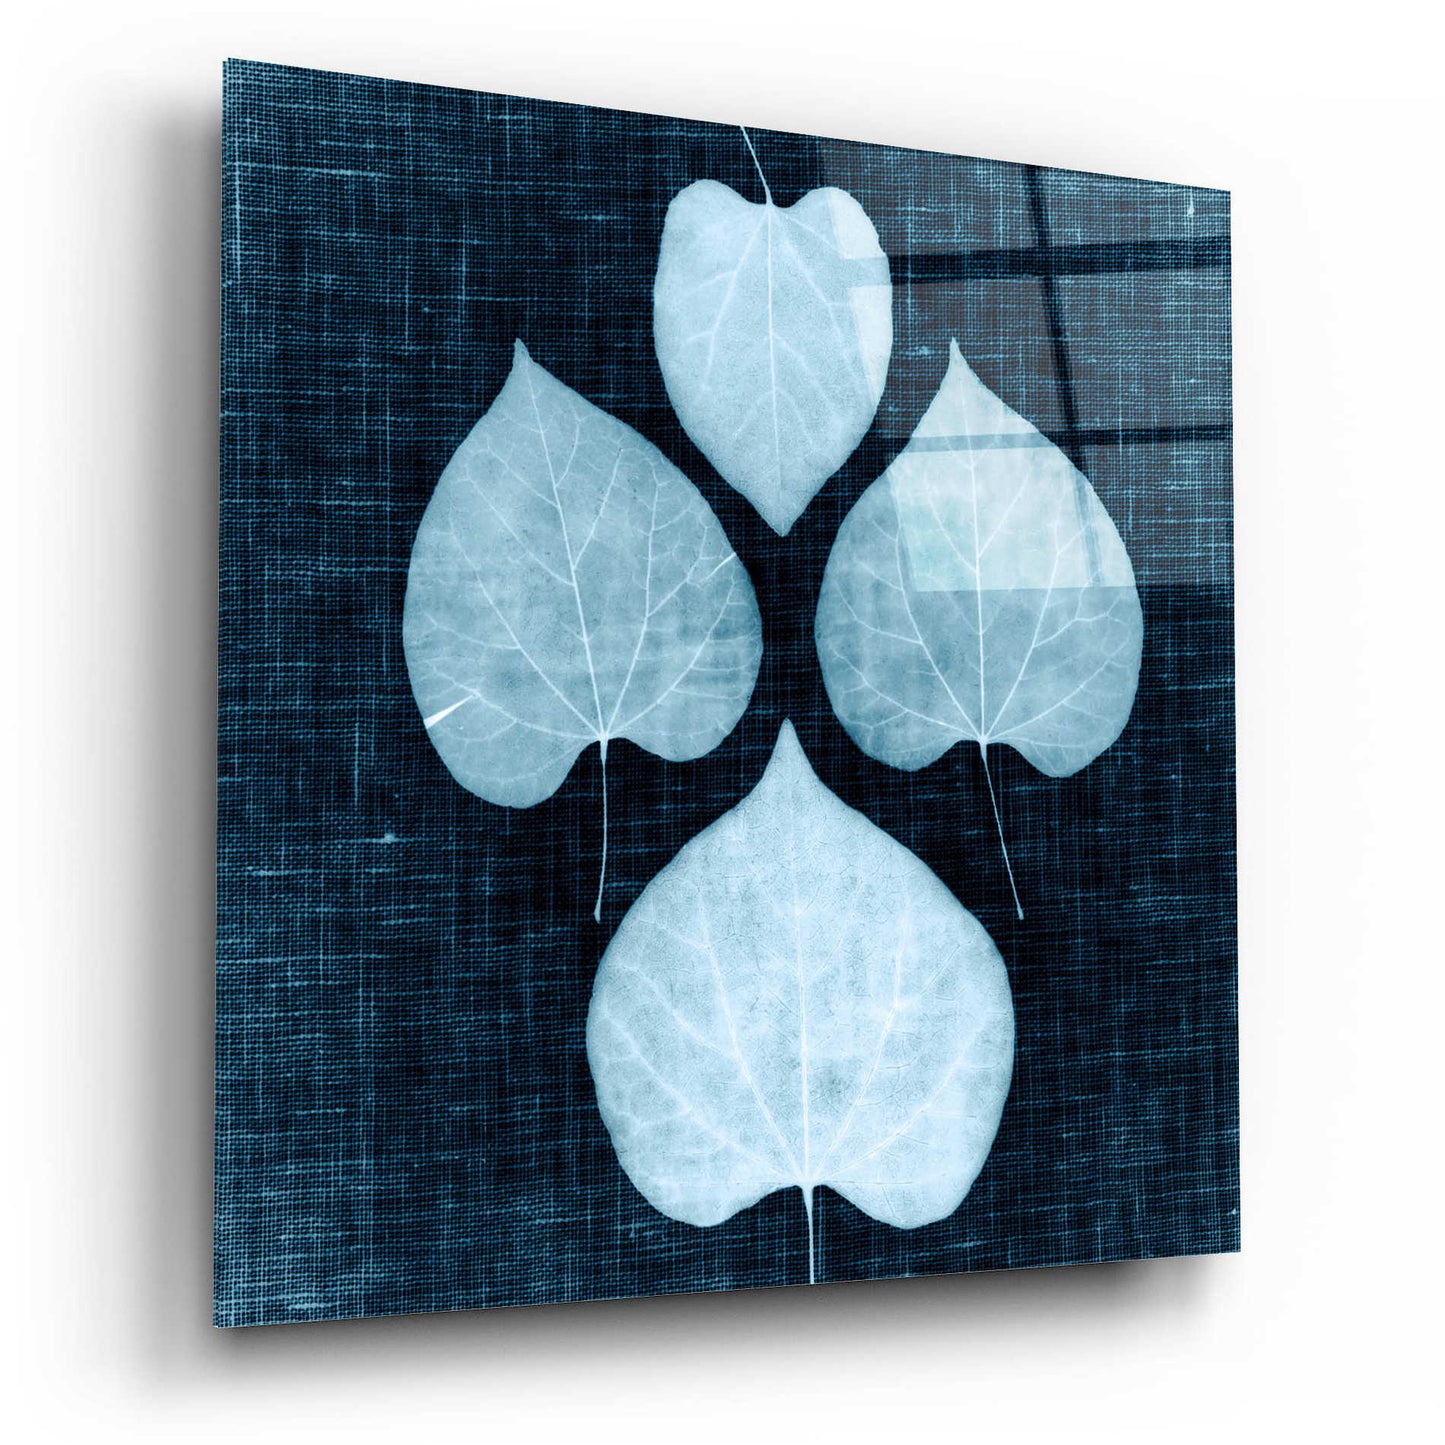 Epic Art 'Leaves on Linen IV' by Debra Van Swearingen, Acrylic Glass Wall Art,12x12